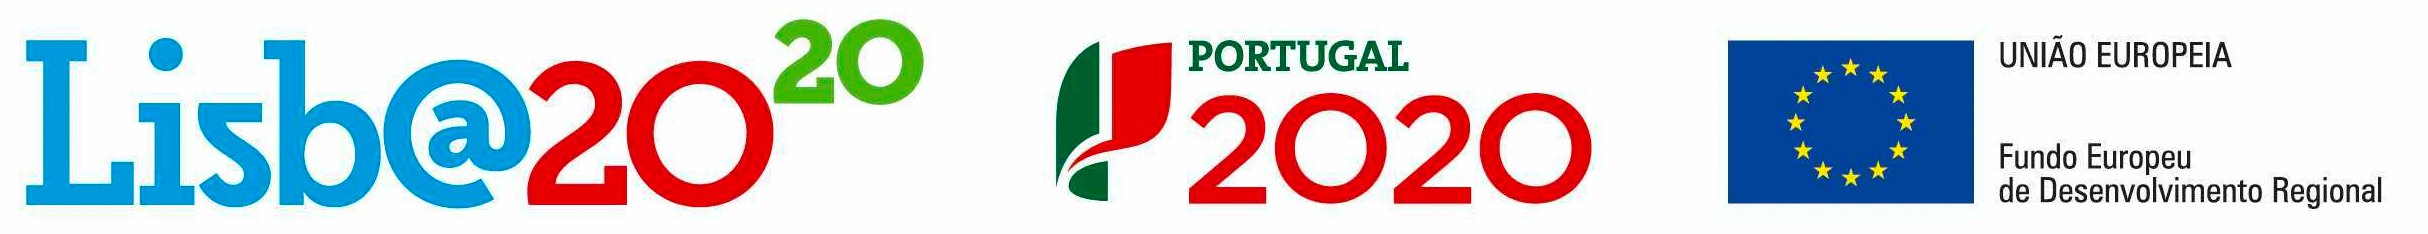 Lisboa 2020 logo